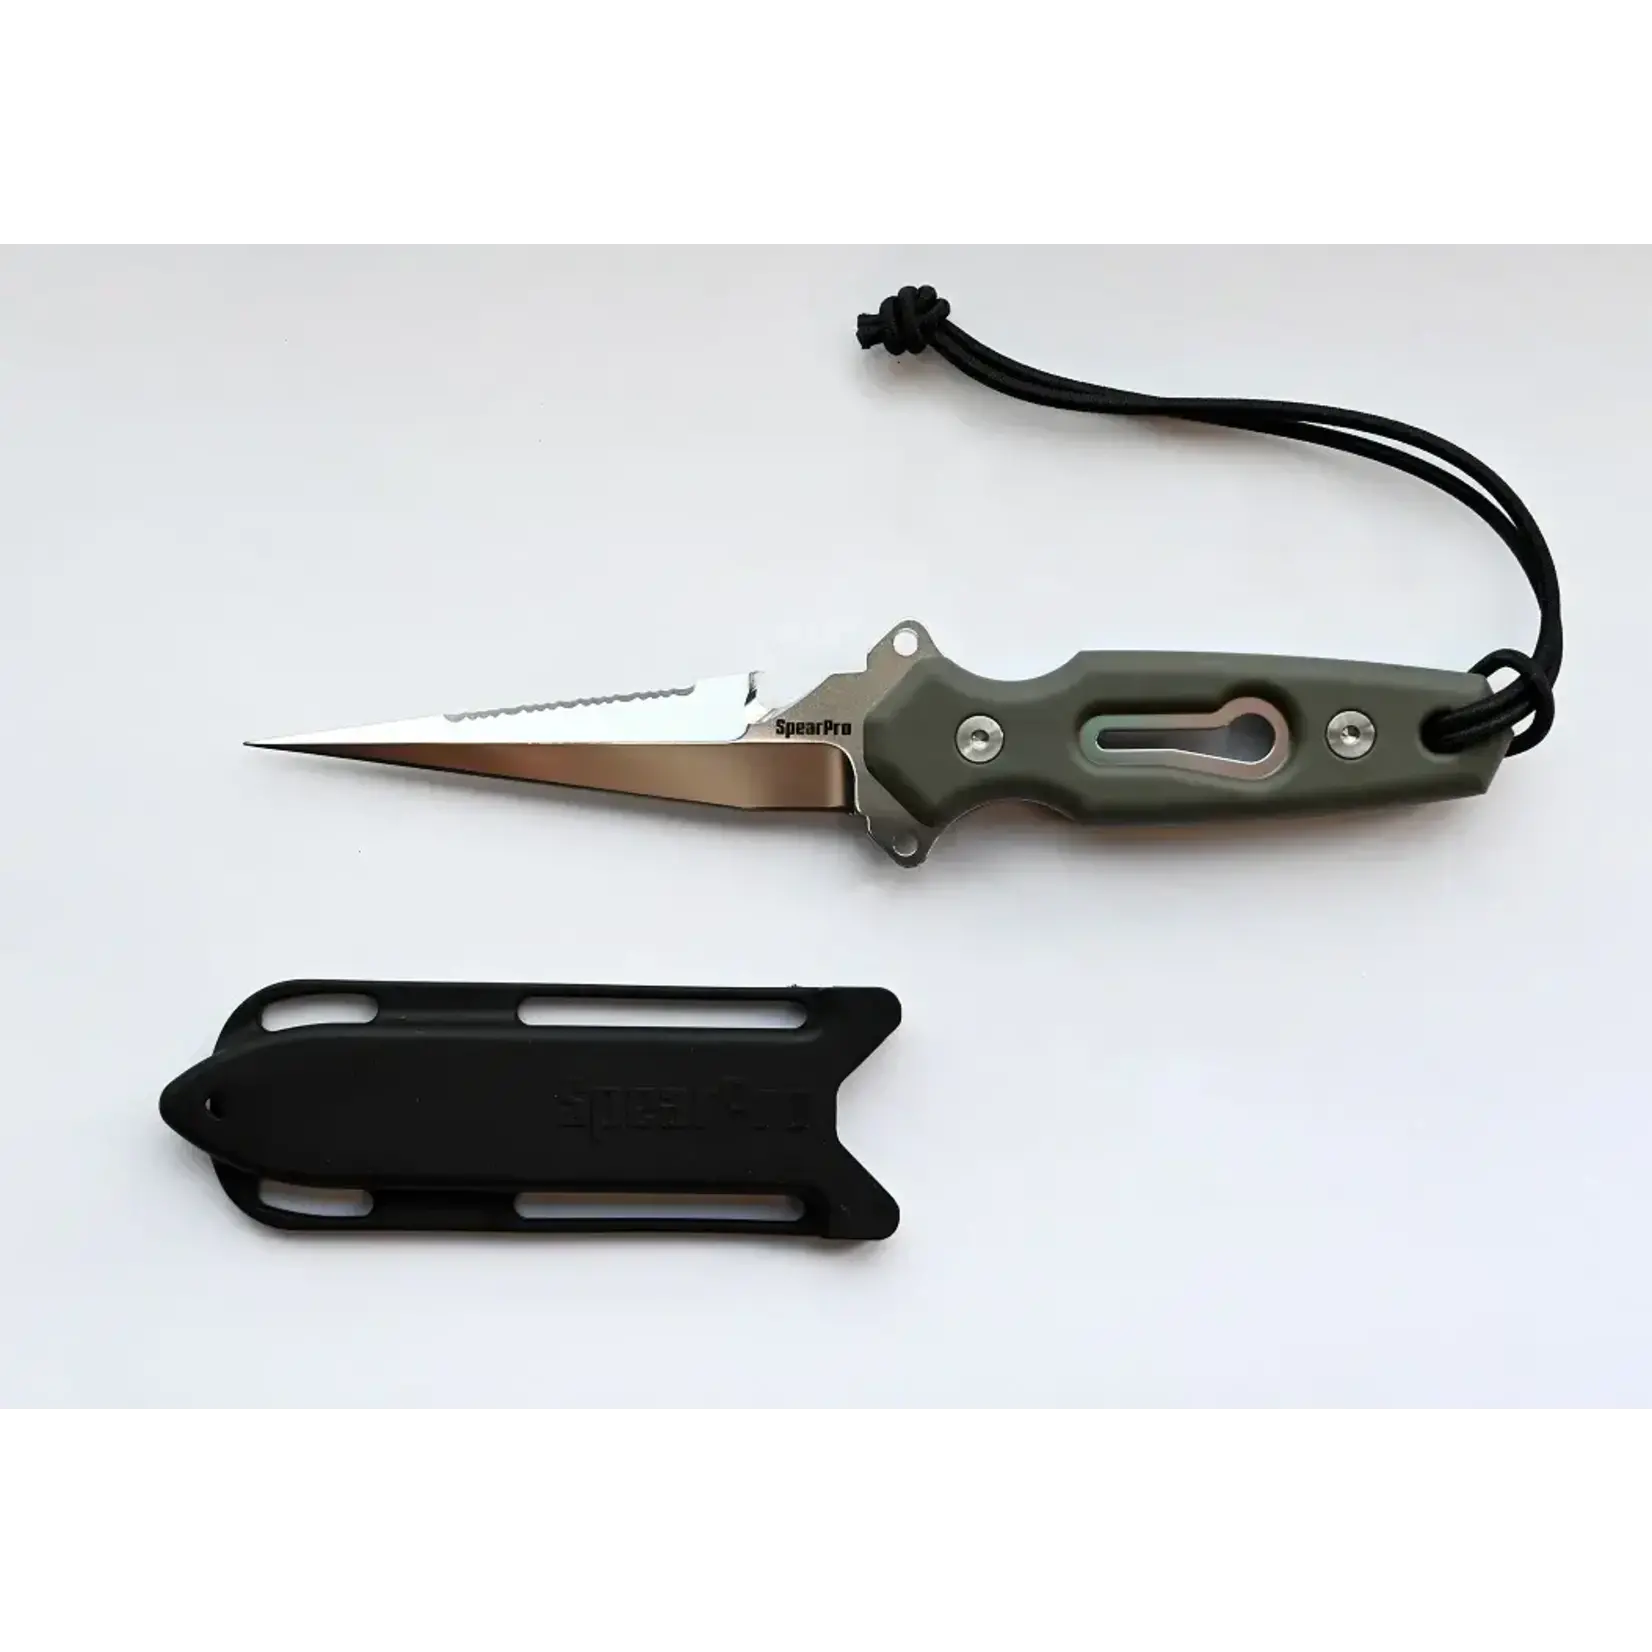 Spearpro Ranger Needle Dive Knife